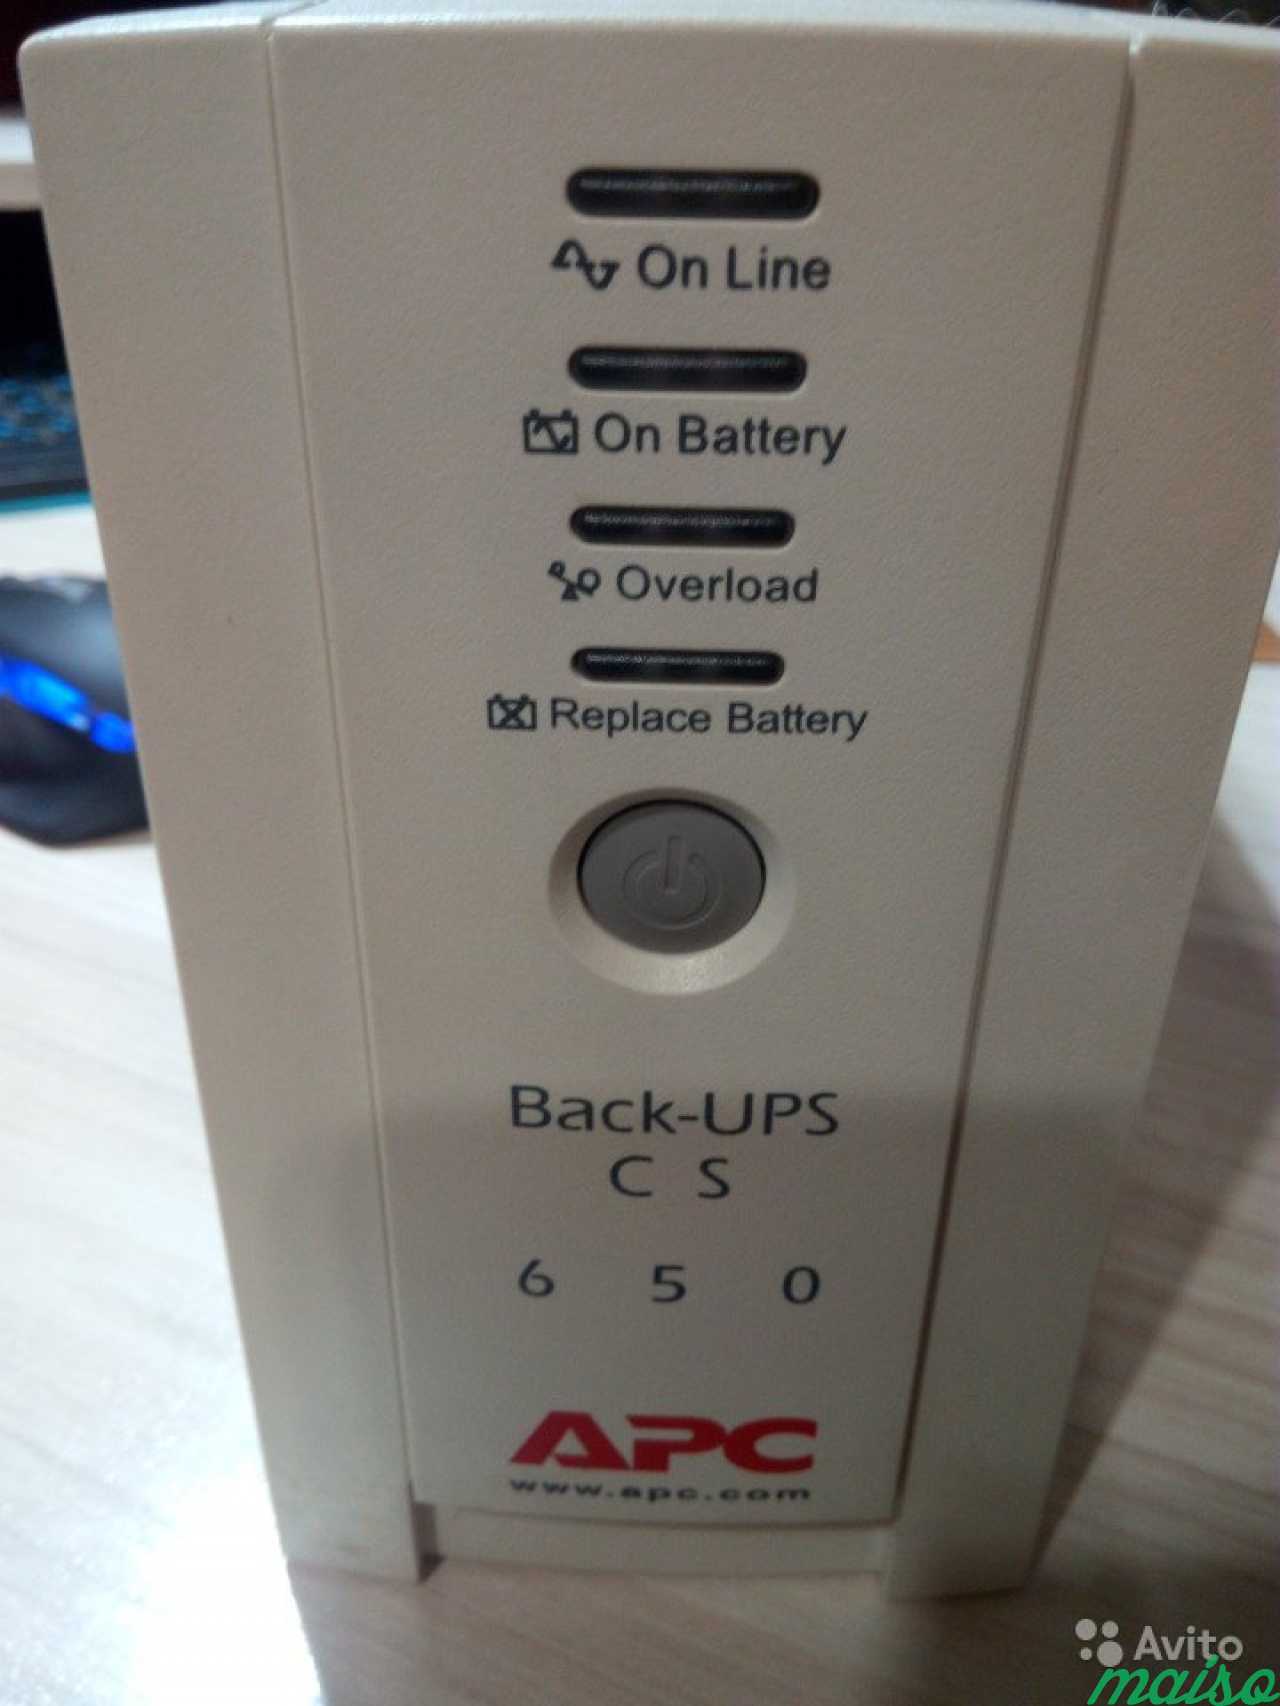 APC back-ups CS 650. Back ups cs 650